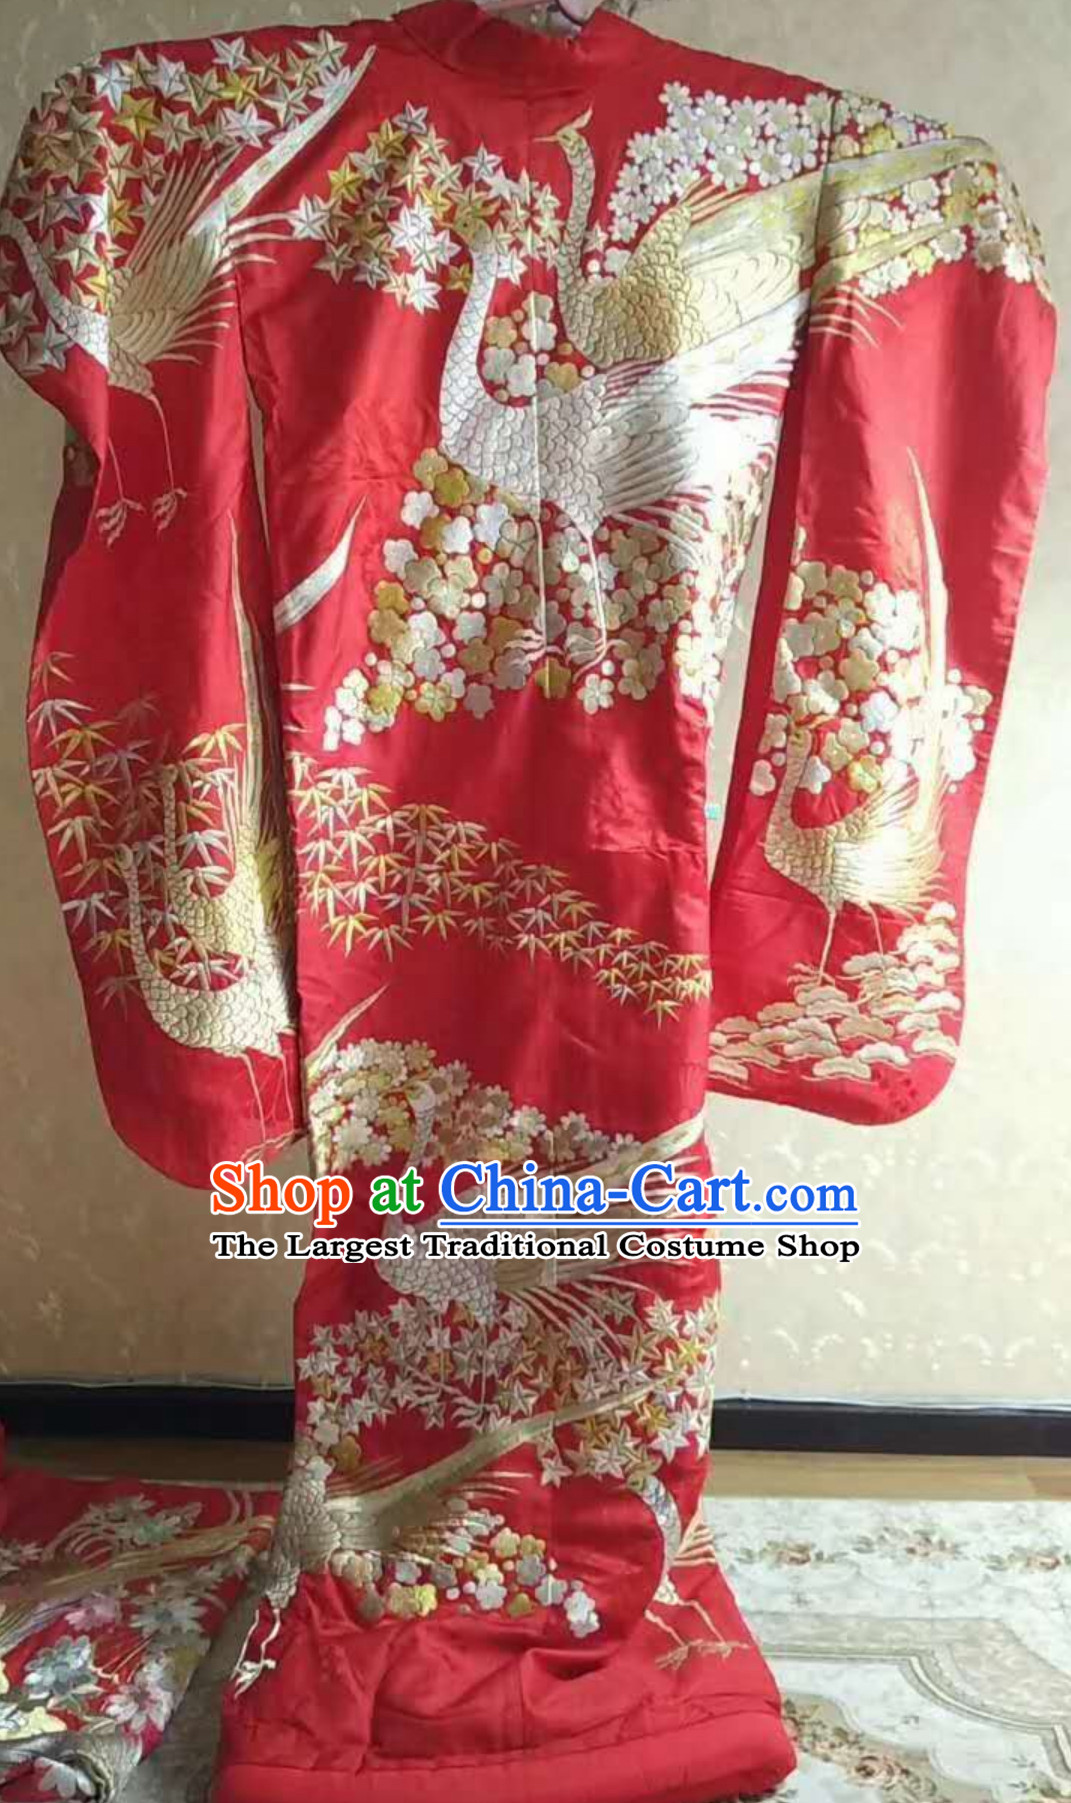 Japanese kimono